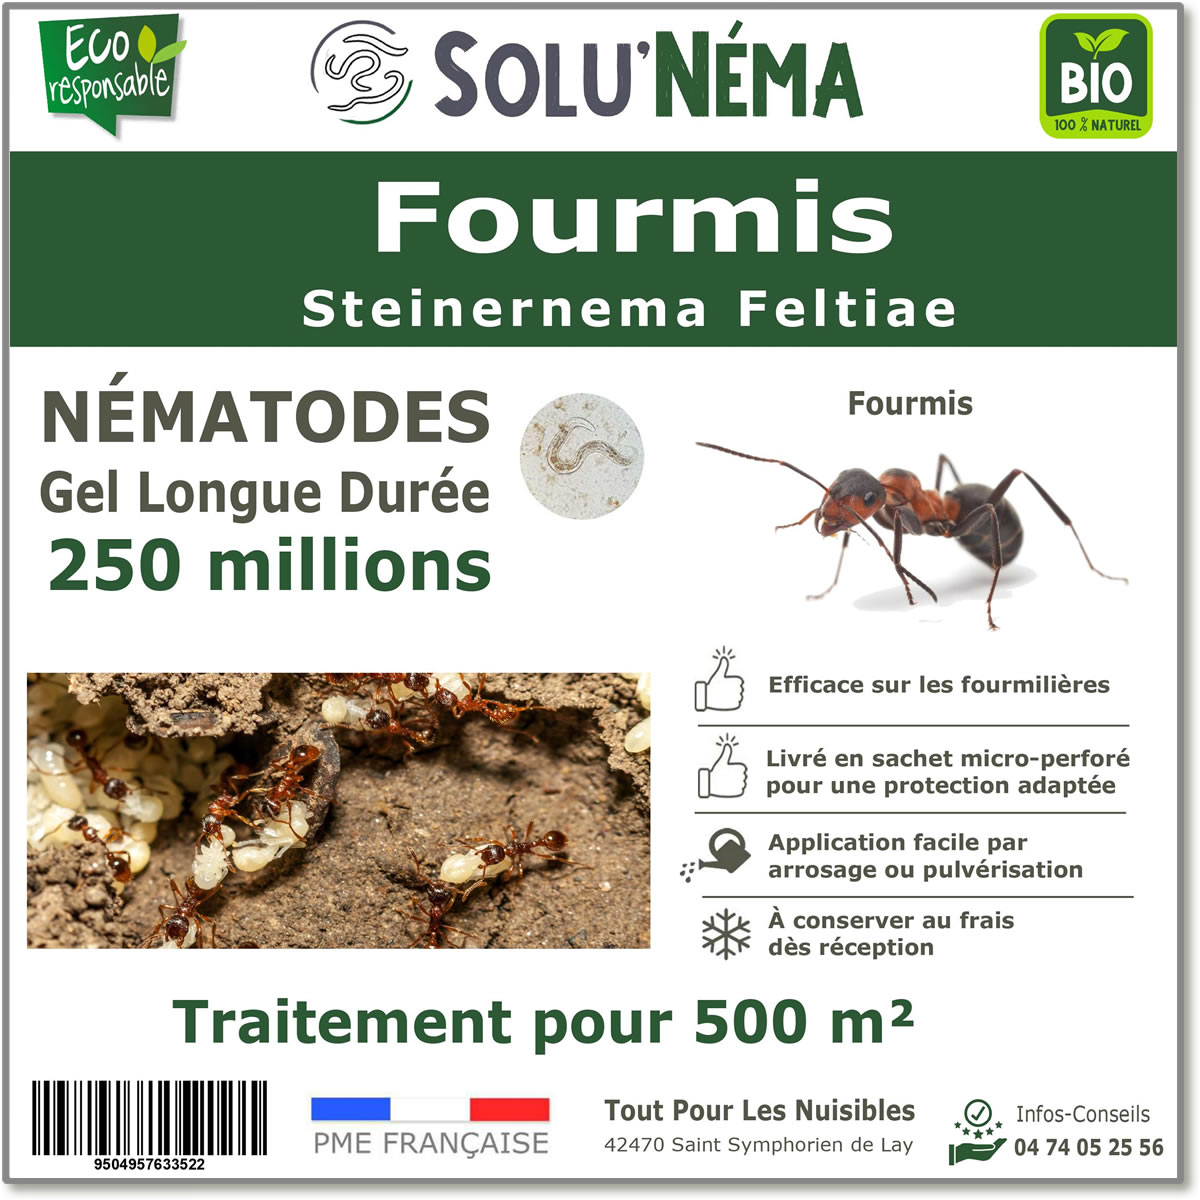 Nematoden mierenbehandeling 250 miljoen